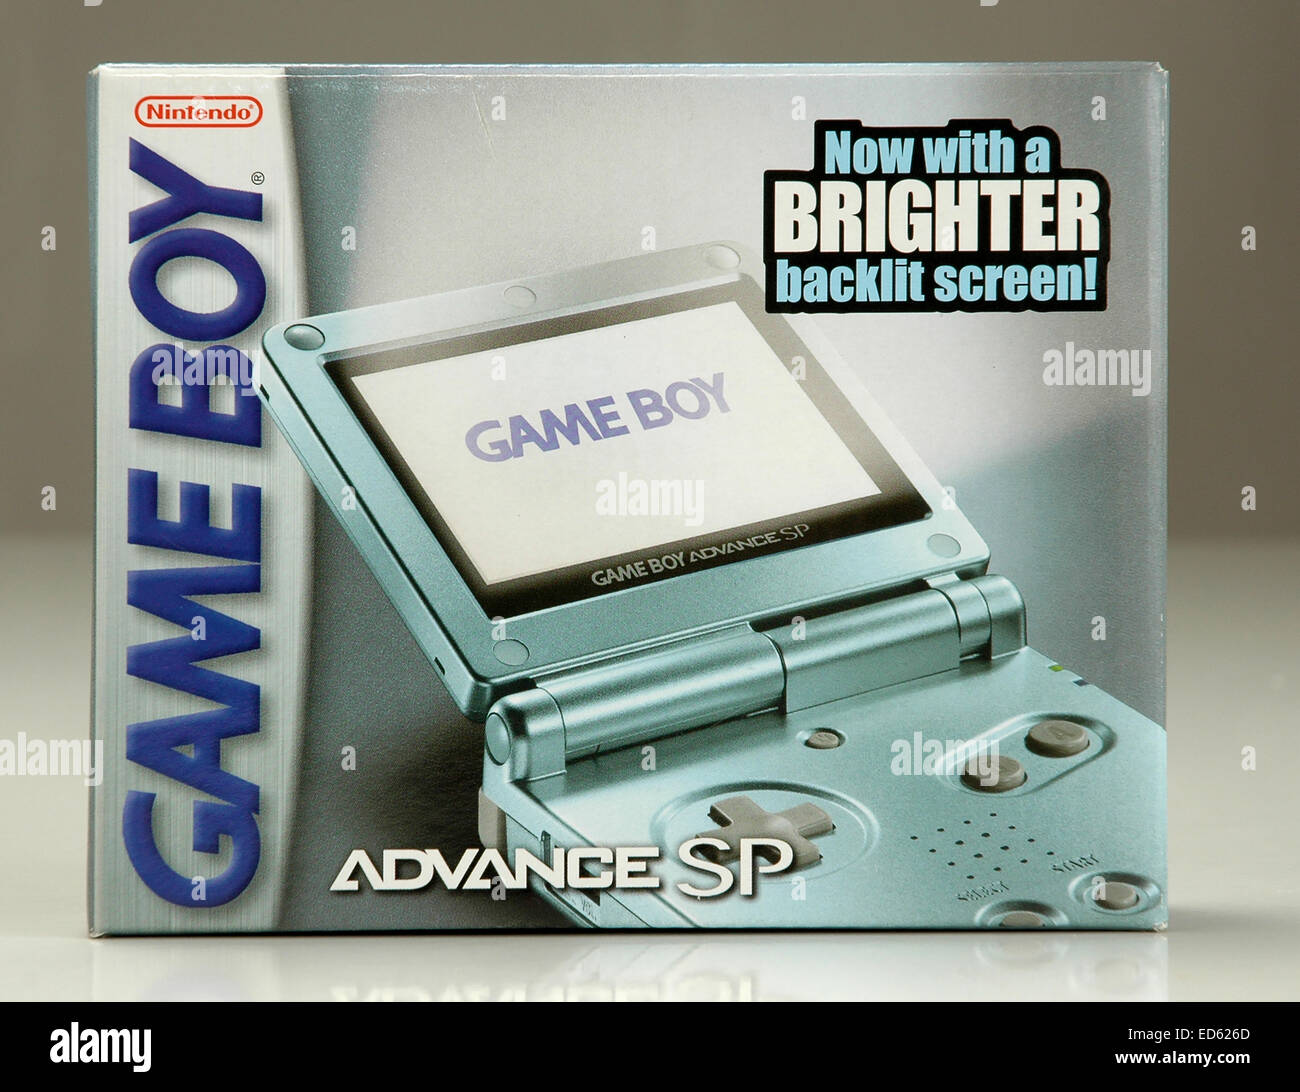 Nintendo Game Boy console box Stock Photo